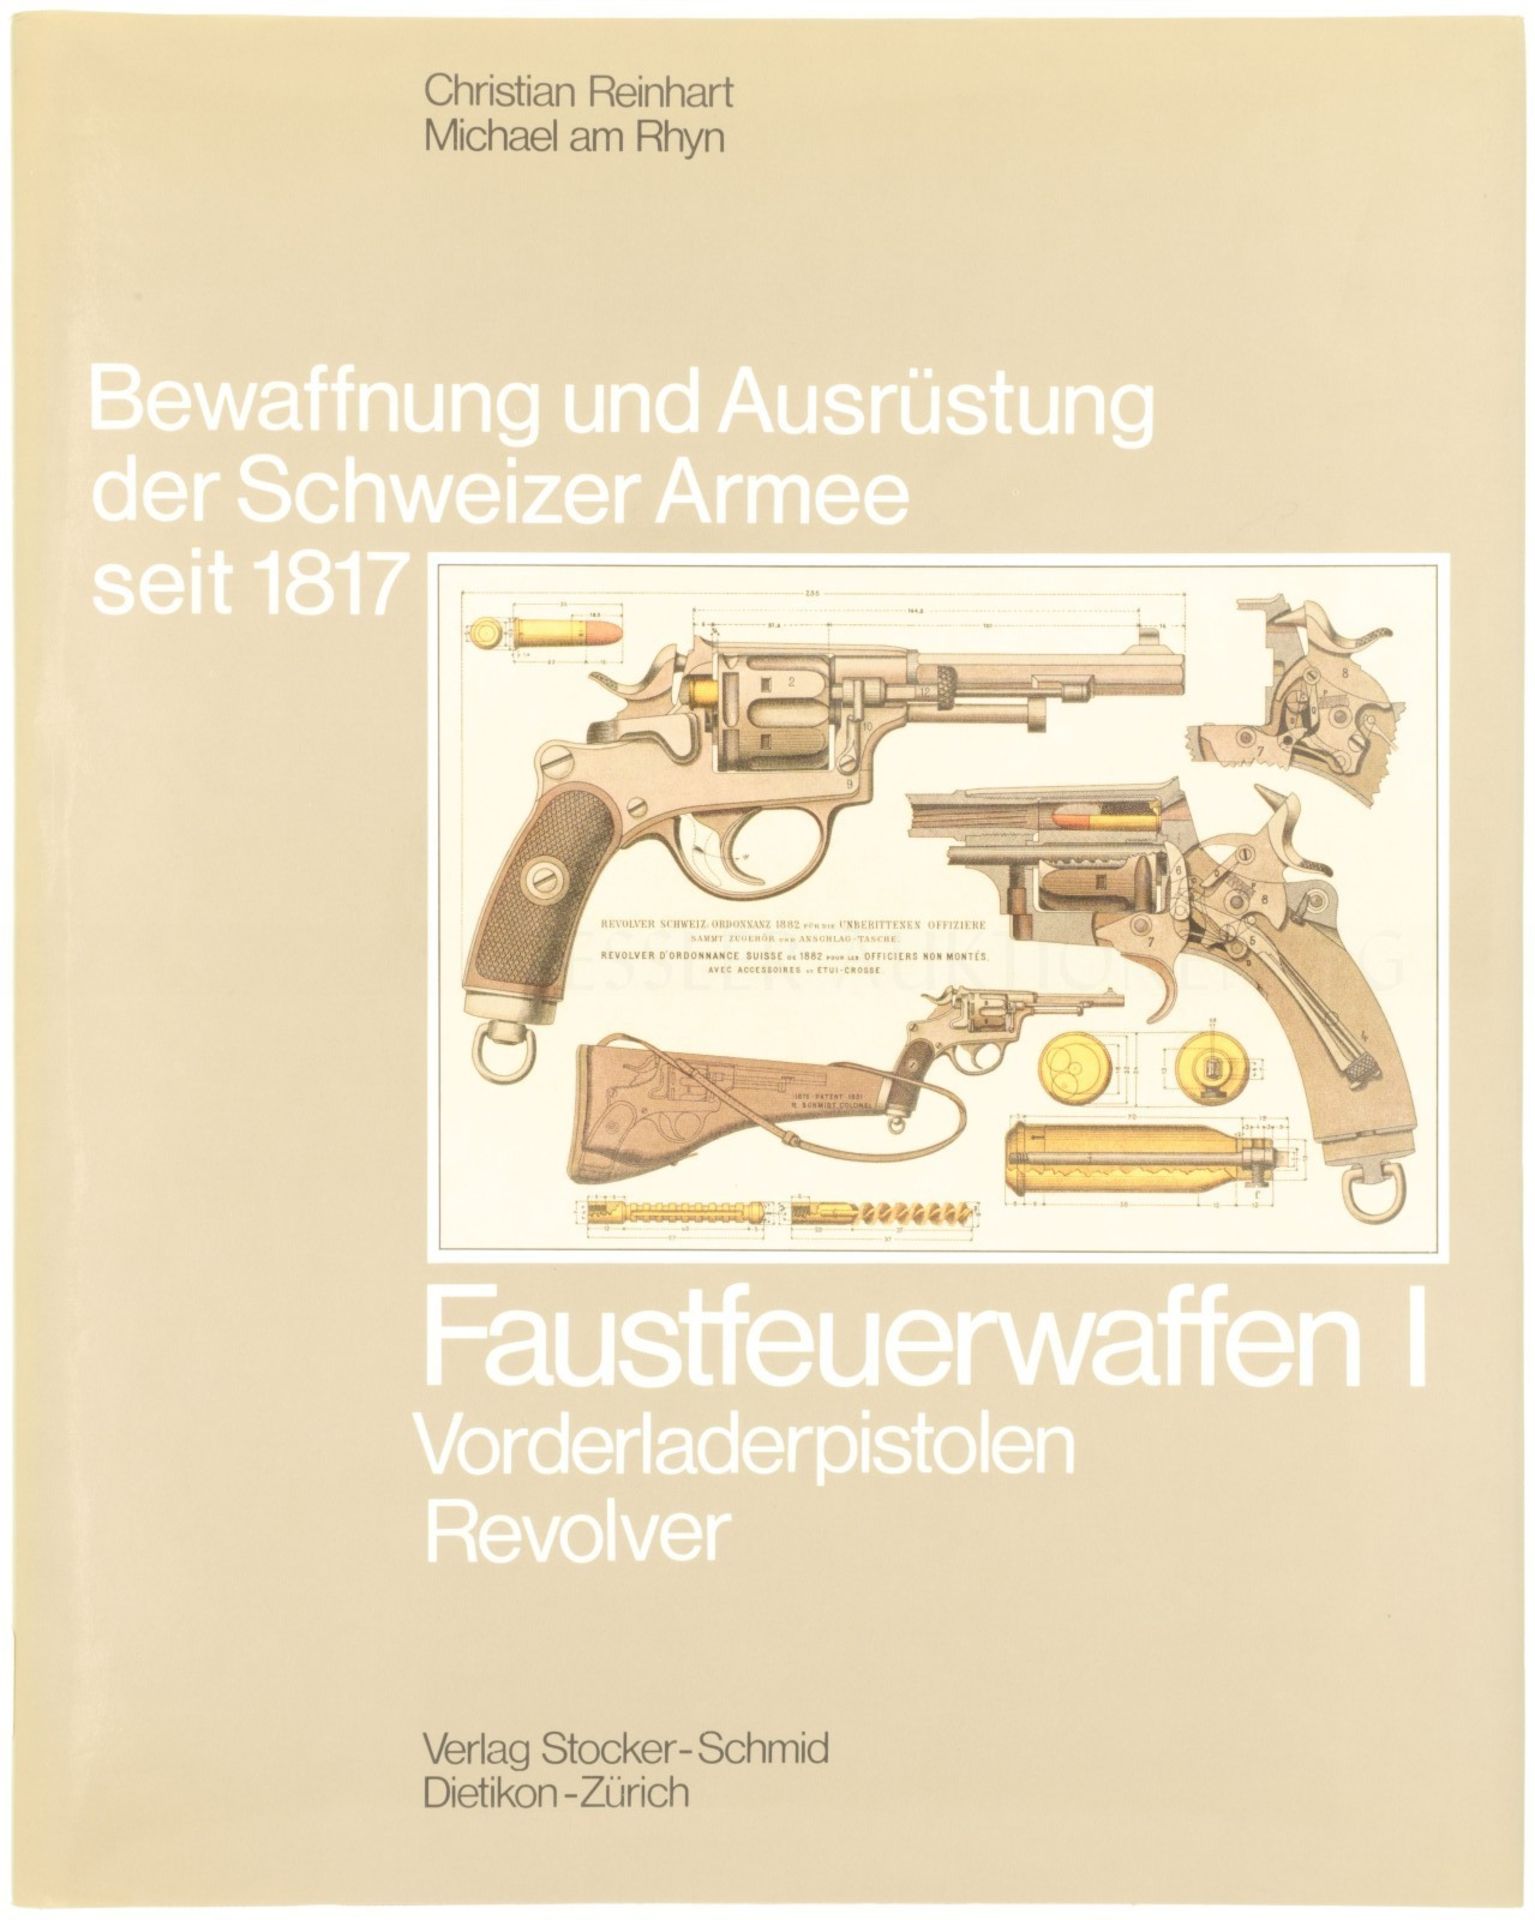 Faustfeuerwaffen I, Band 5 aus der Reihe "Bewaffnung und Ausrüstung der Schweizer Armee seit 1817"